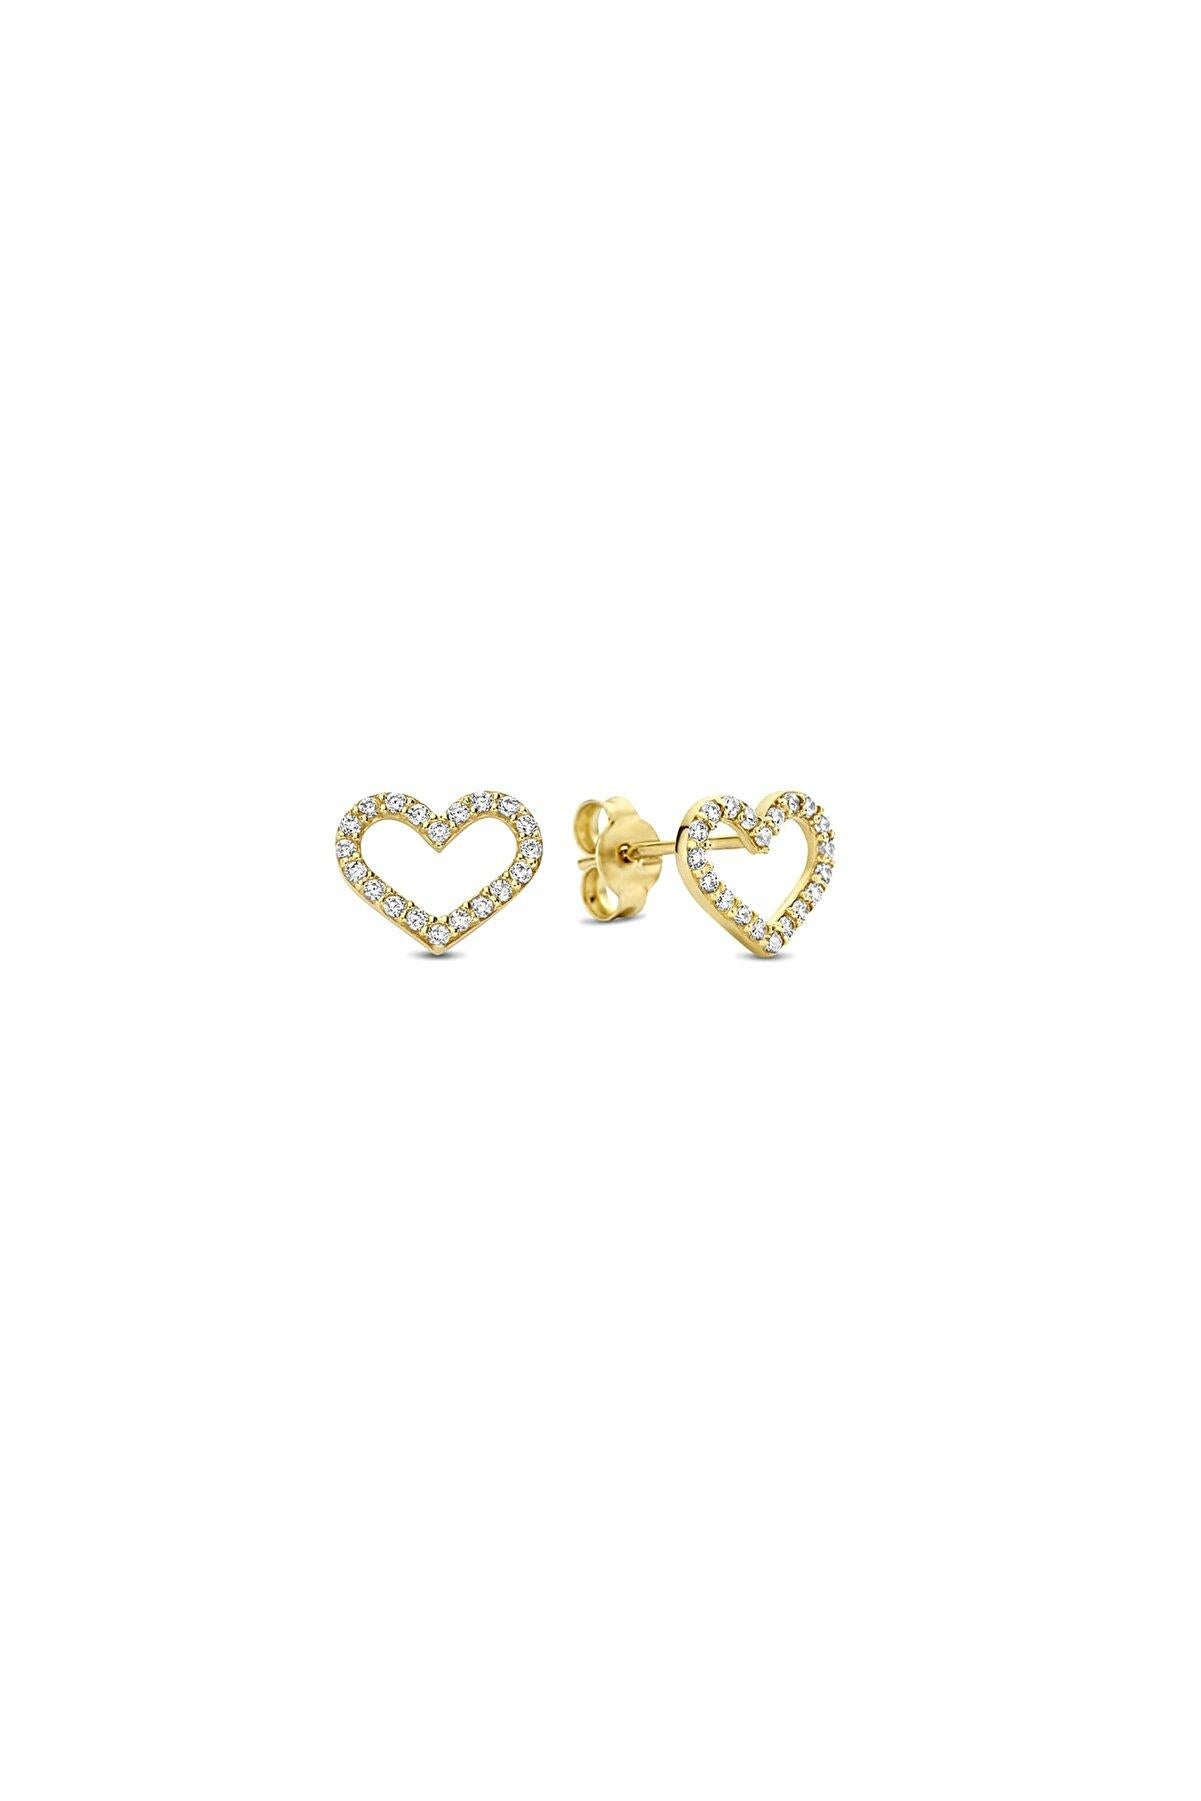 Round Cut Heart Earrings Studs in 14k Yellow Gold, Mini Heart-Shaped Stud Earrings For Sale